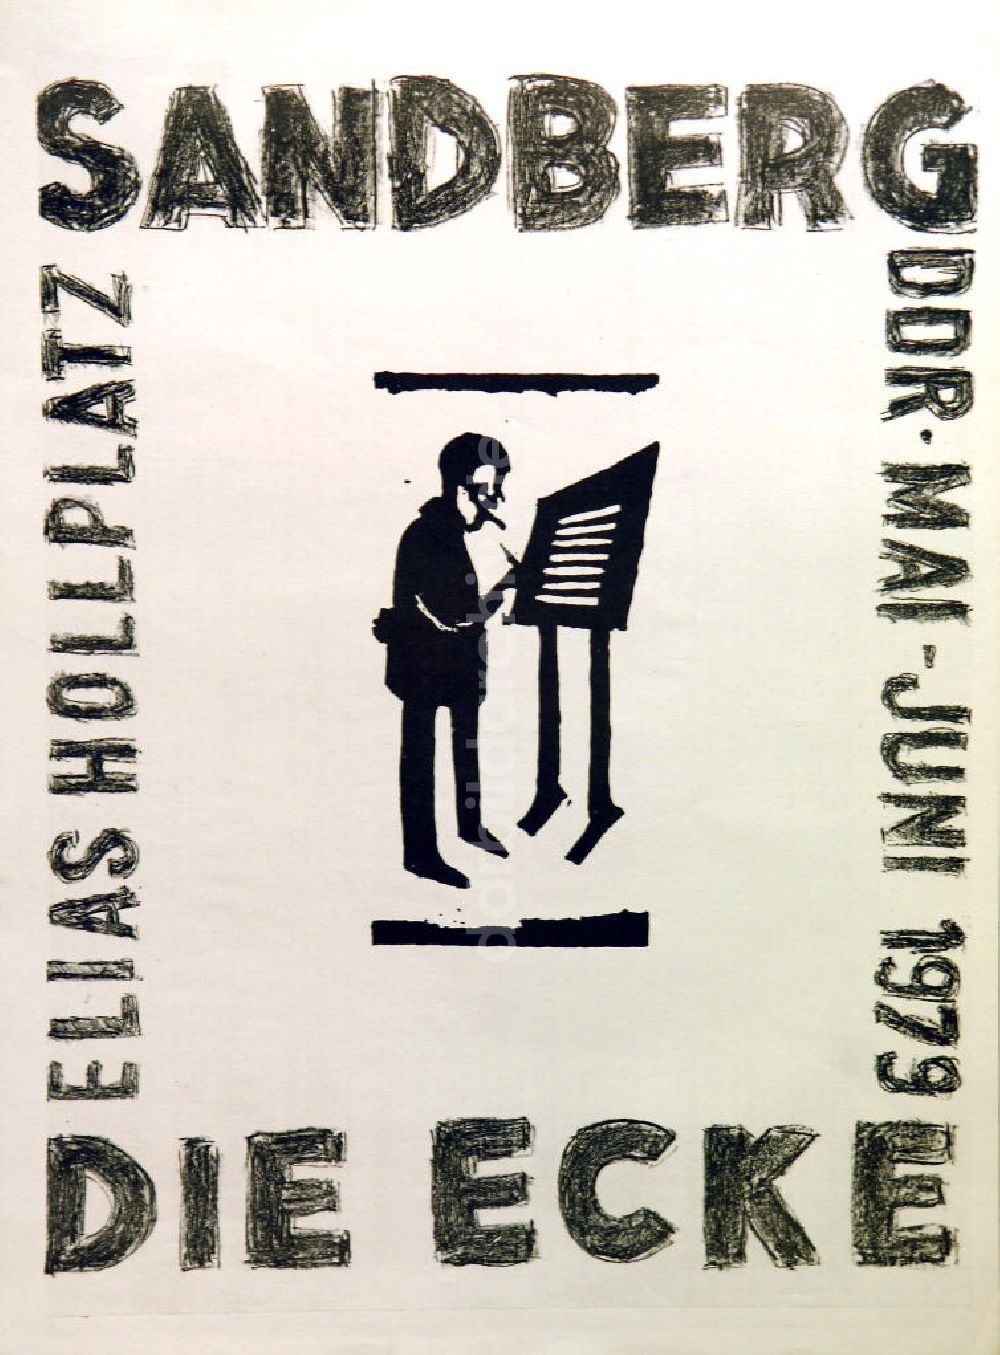 DDR-Bildarchiv: Berlin - Plakat von der Ausstellung Sandberg DDR, Die Ecke über Herbert Sandberg aus dem Jahr 1979